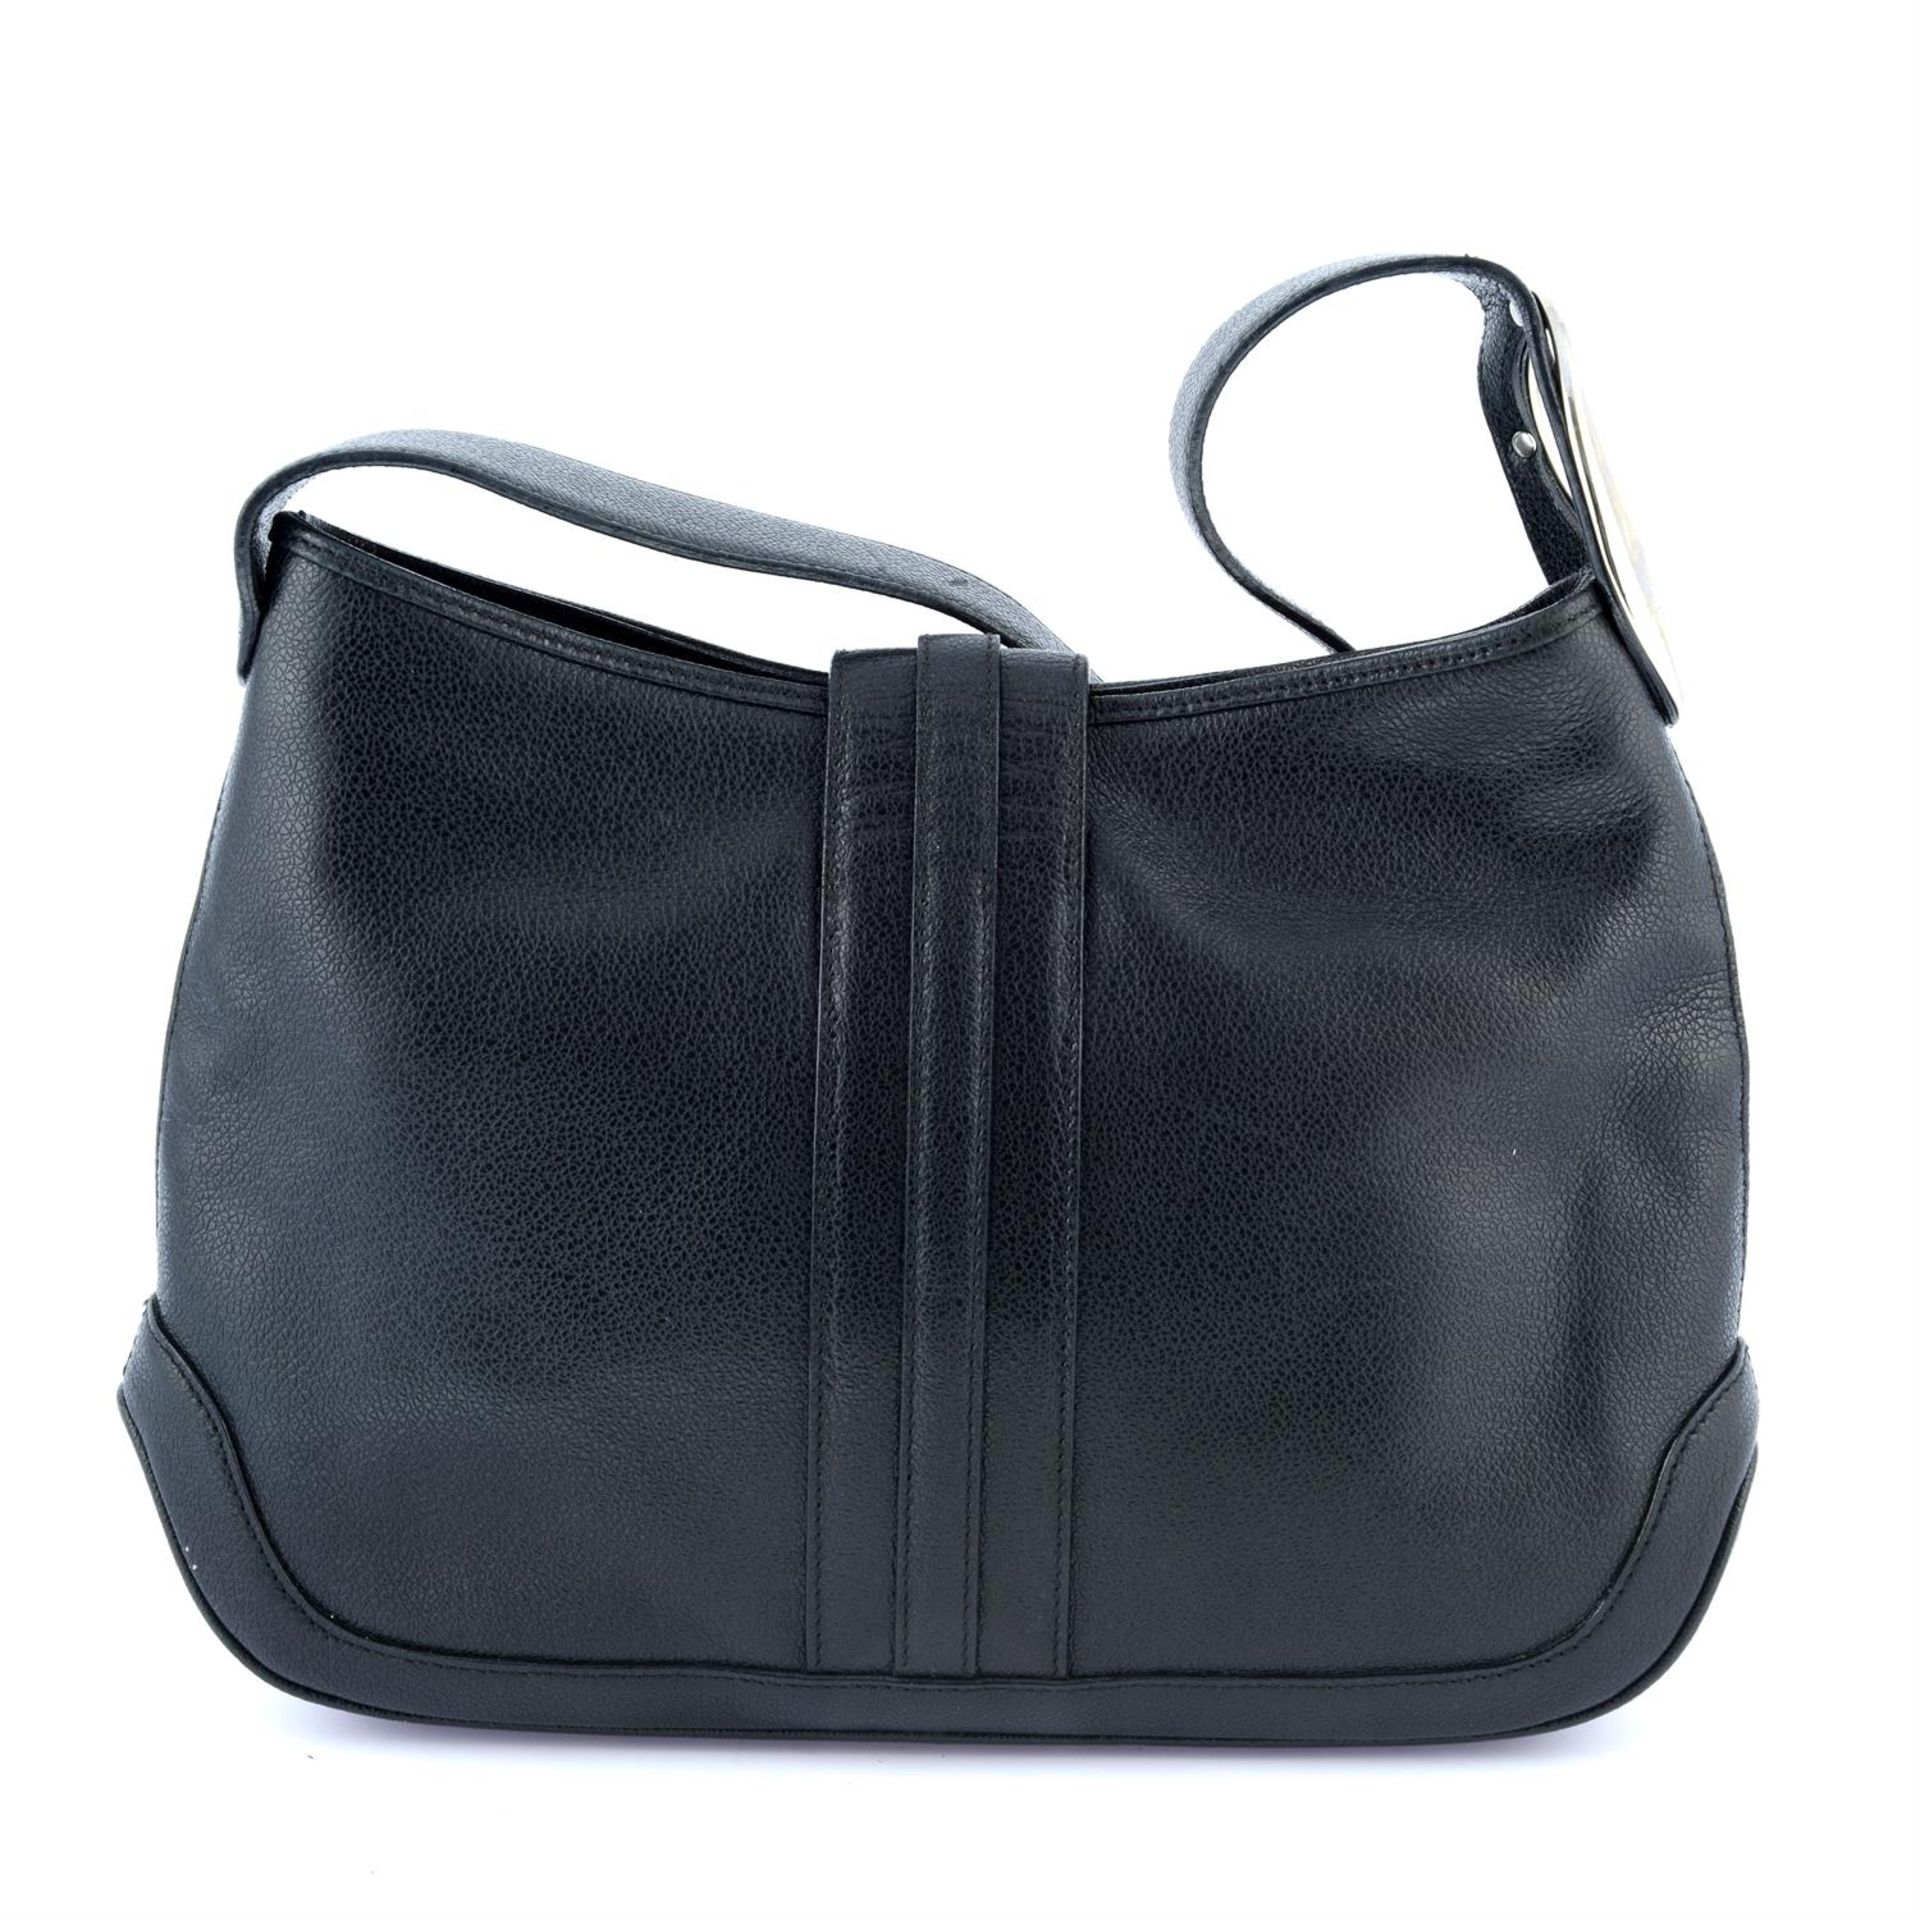 BULGARI - a black leather shoulder bag. - Image 2 of 4